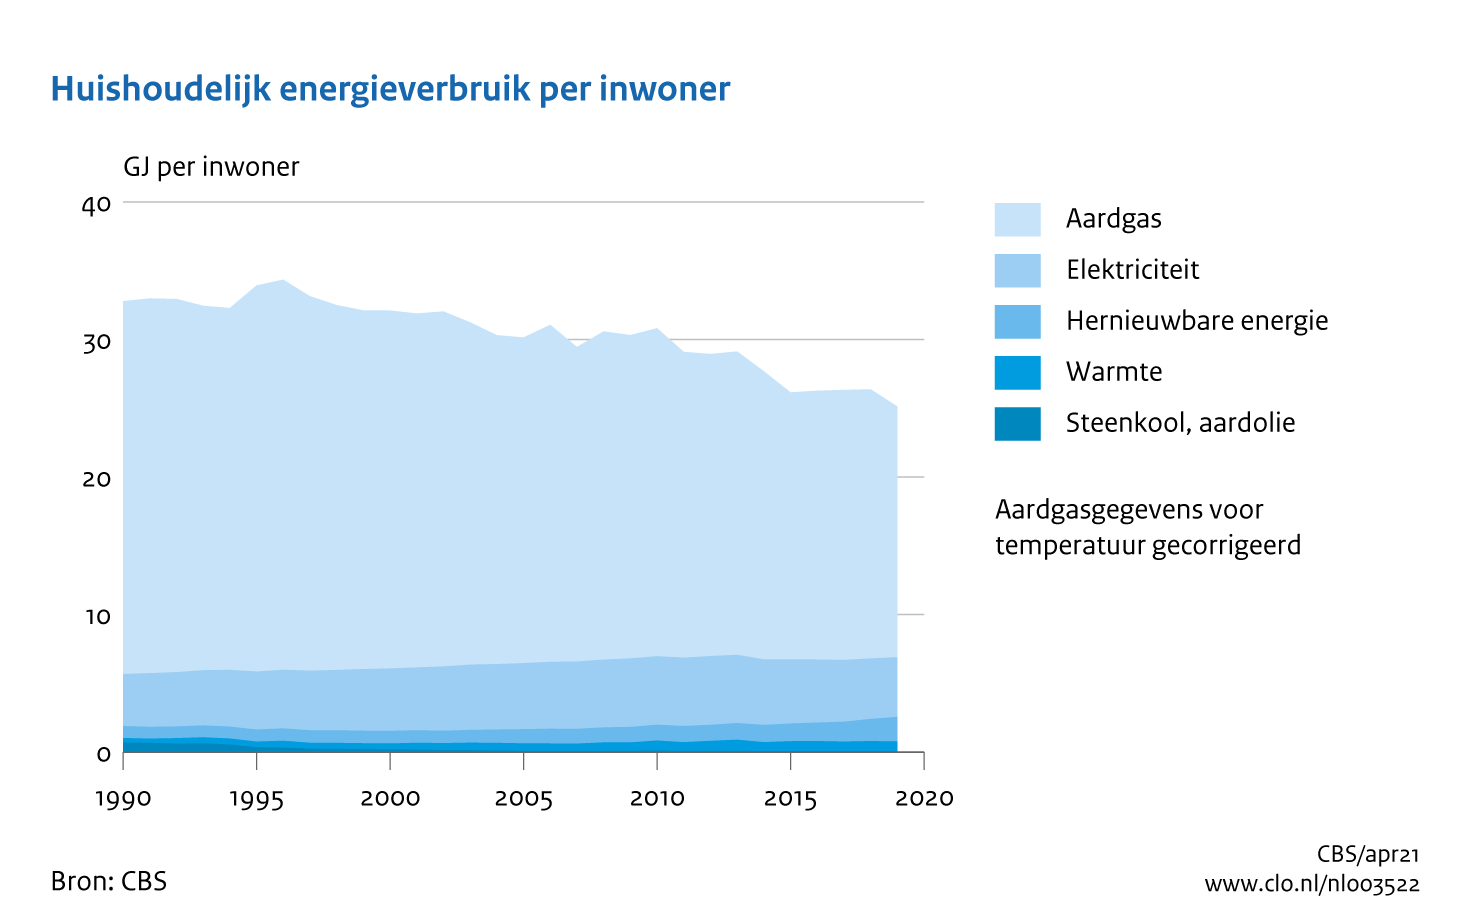 Figuur Energieverbruik huishoudens per inwoner, 1990-2019. In de rest van de tekst wordt deze figuur uitgebreider uitgelegd.